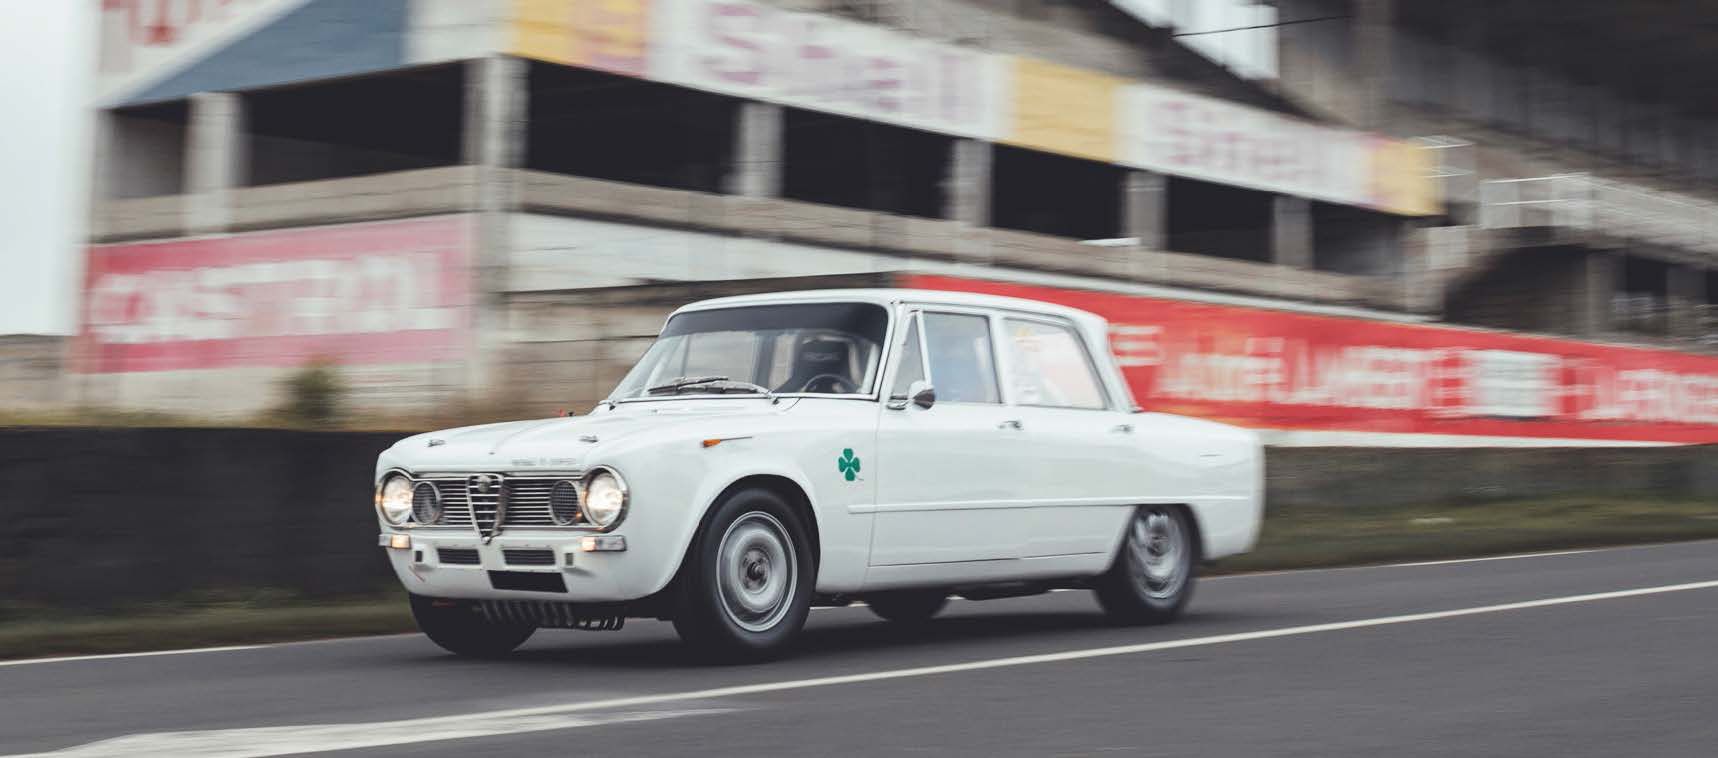 1964 ALFA ROMEO GIULIA 1600 TI SUPER 
Fahrzeug ohne technische Kontrolle verkauf&hellip;